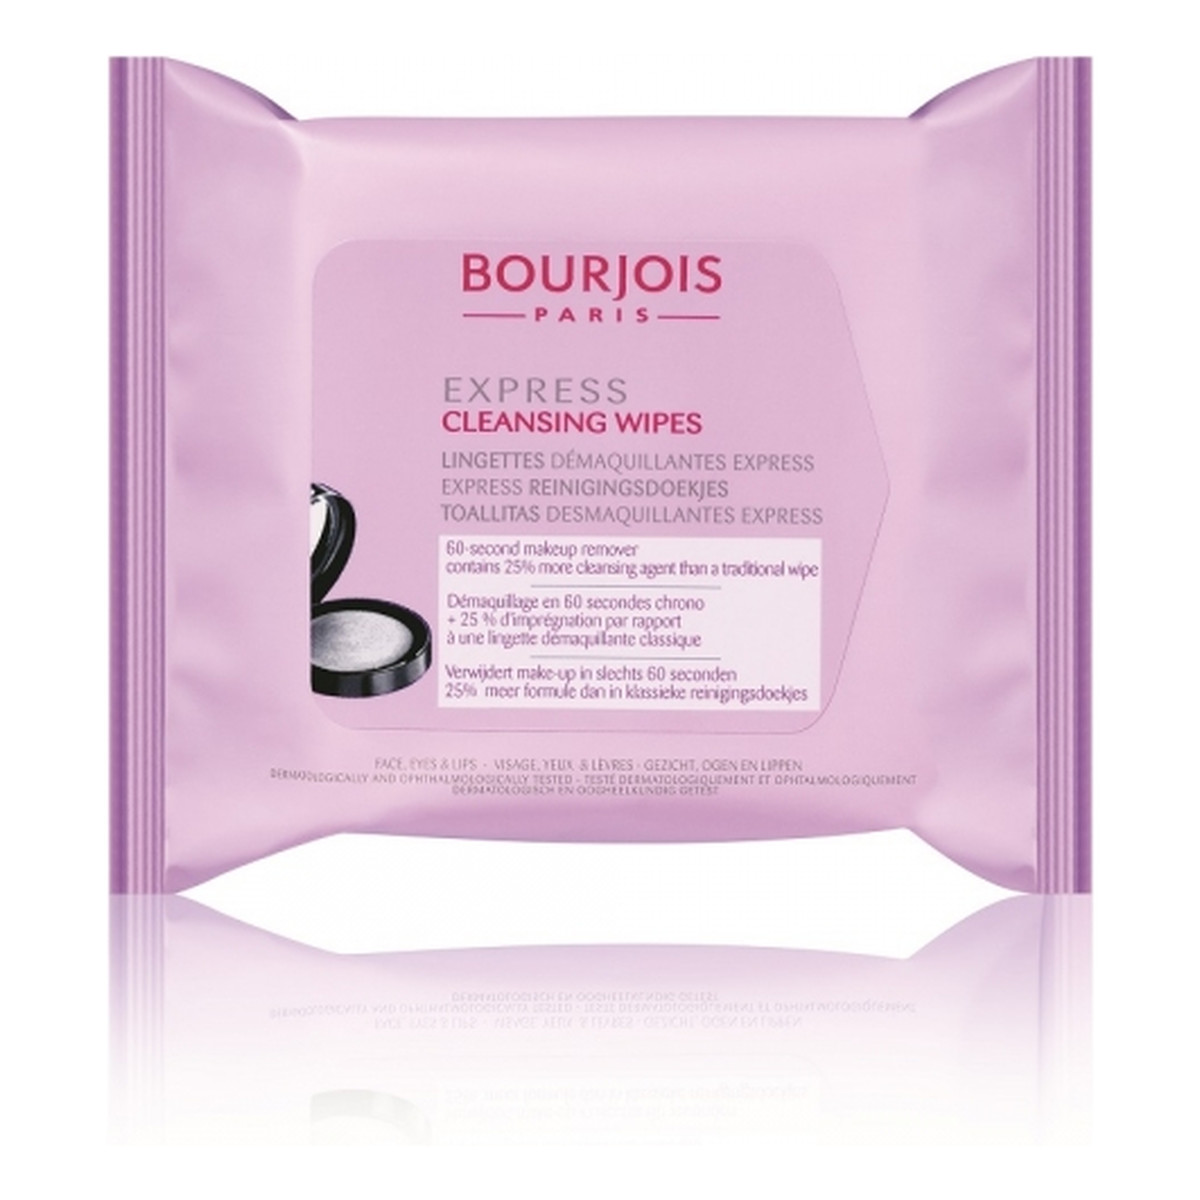 Bourjois Express Cleansing Wipes hipoalergiczne chusteczki do ekspresowego demakijażu 25 szt.